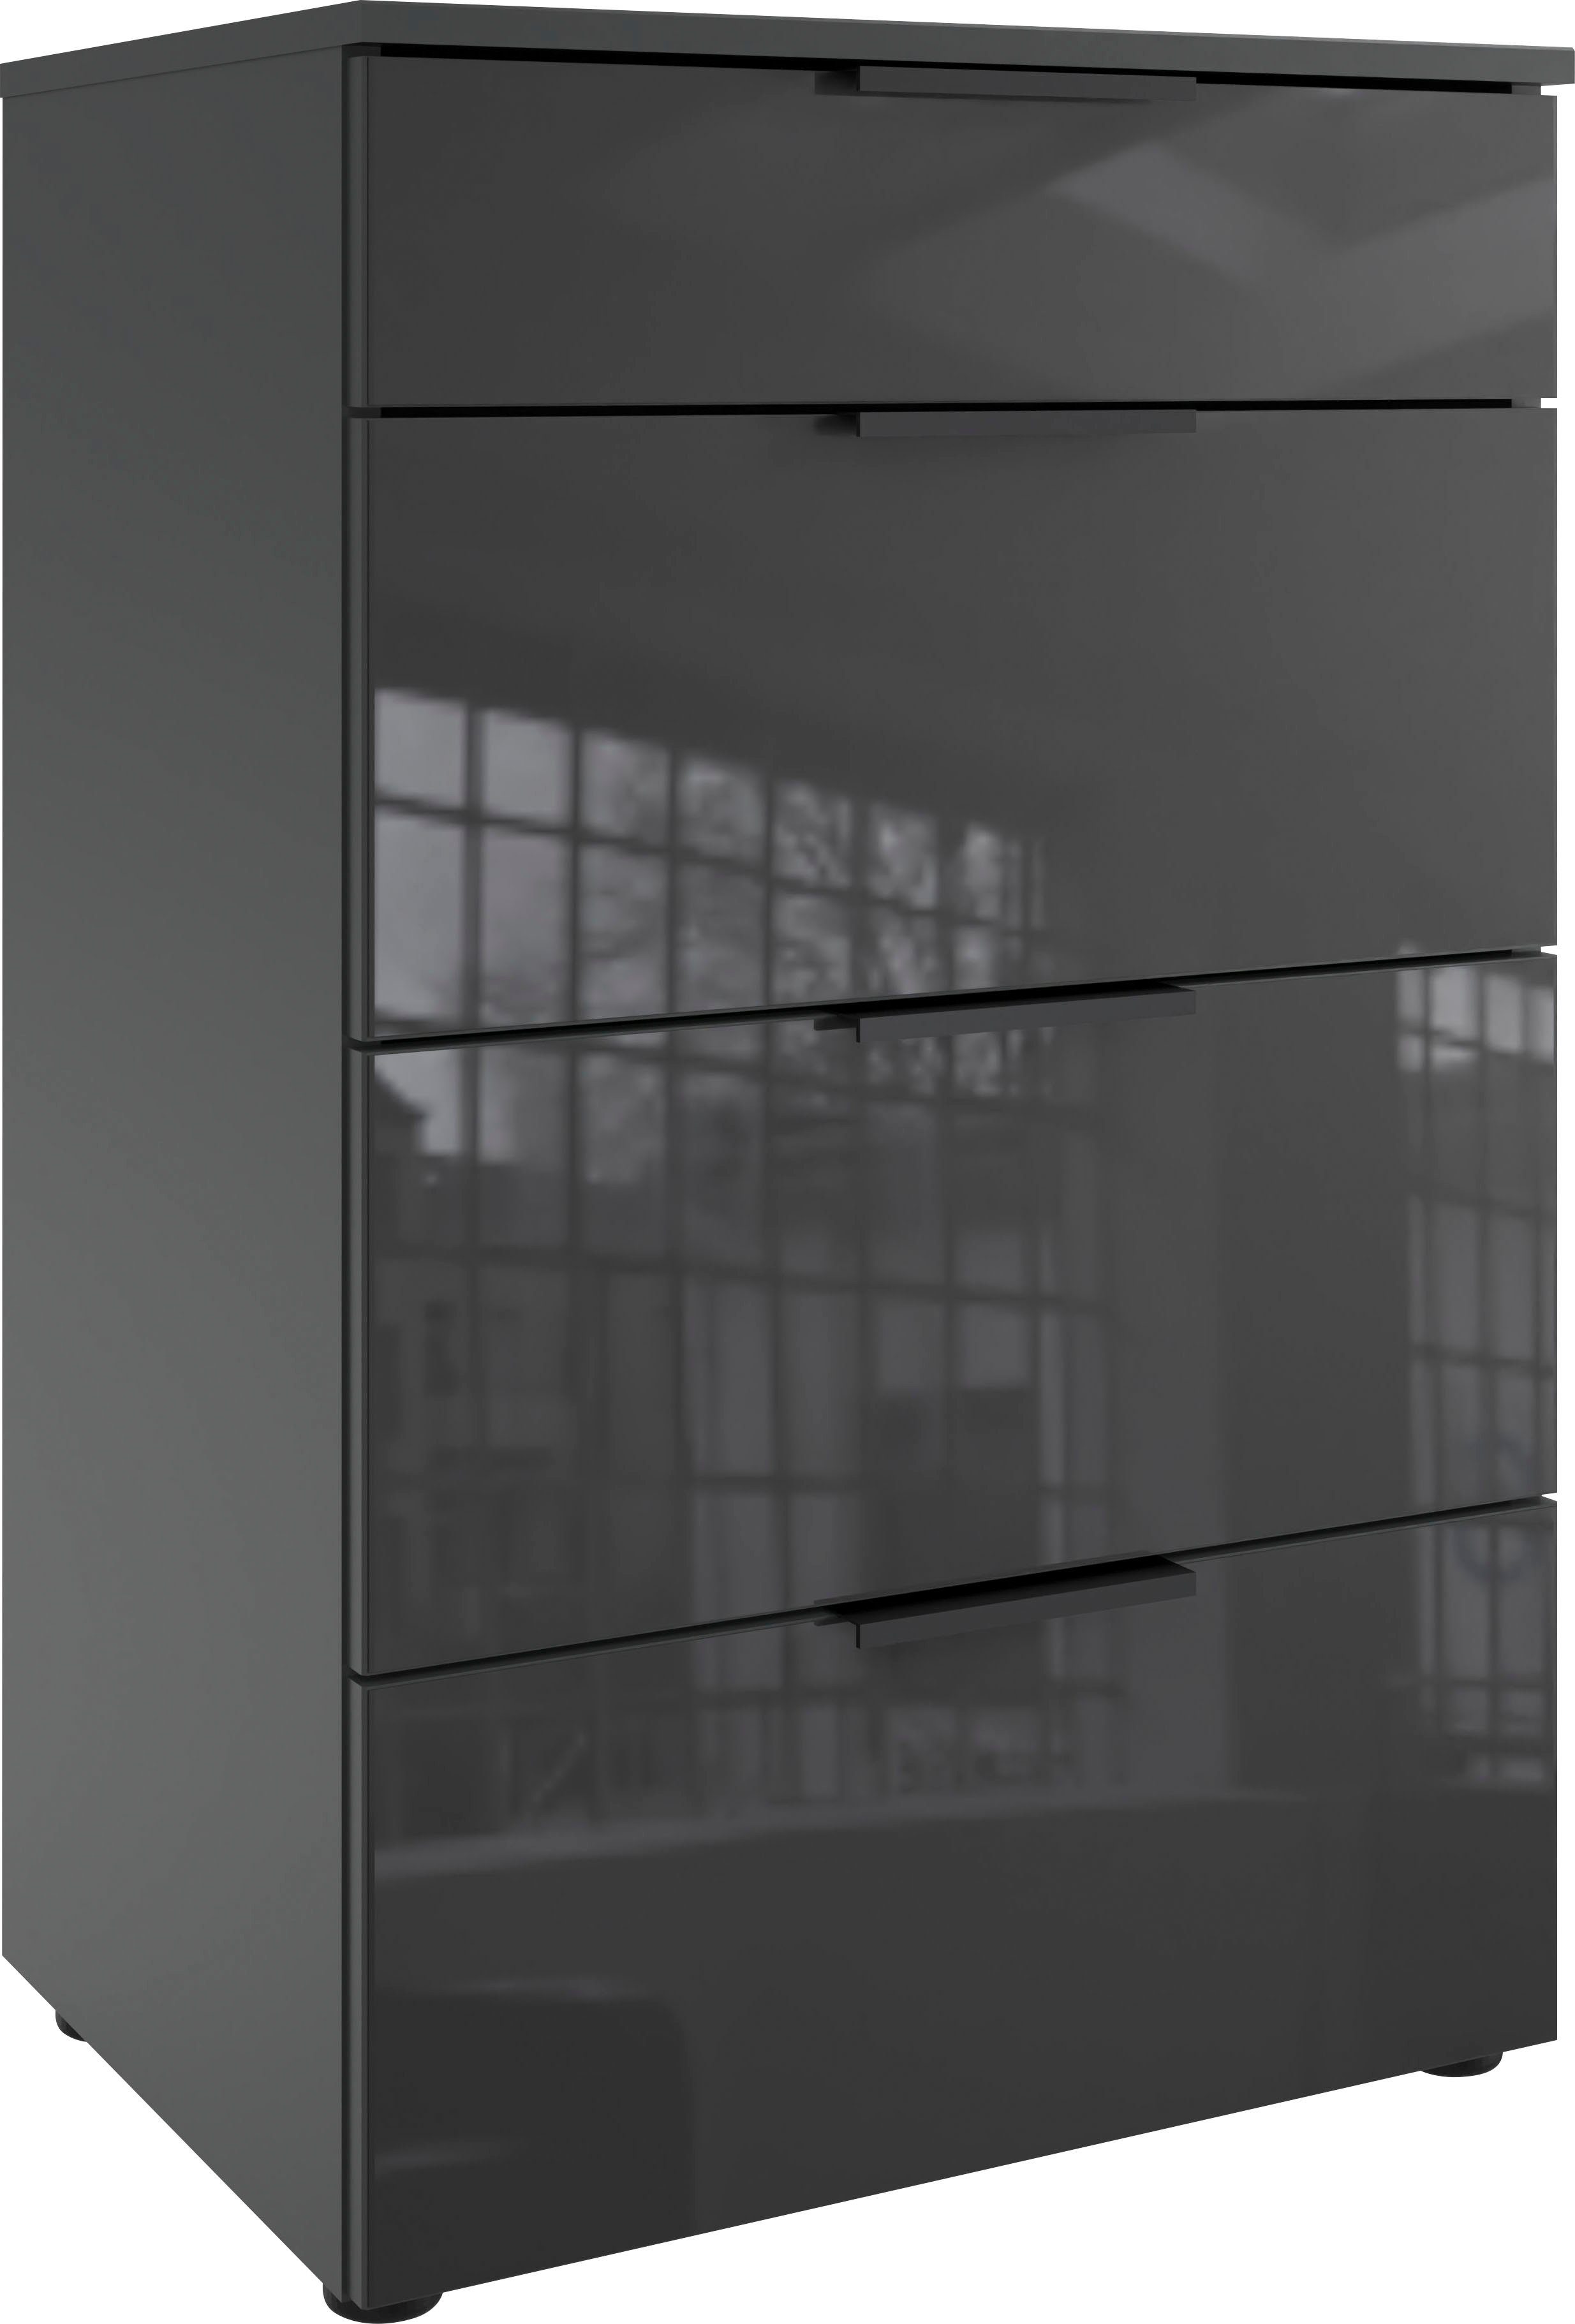 wimex ladekast level36 black c by fresh to go met glazen elementen aan de voorkant, soft-close functie, 54 cm breed wit